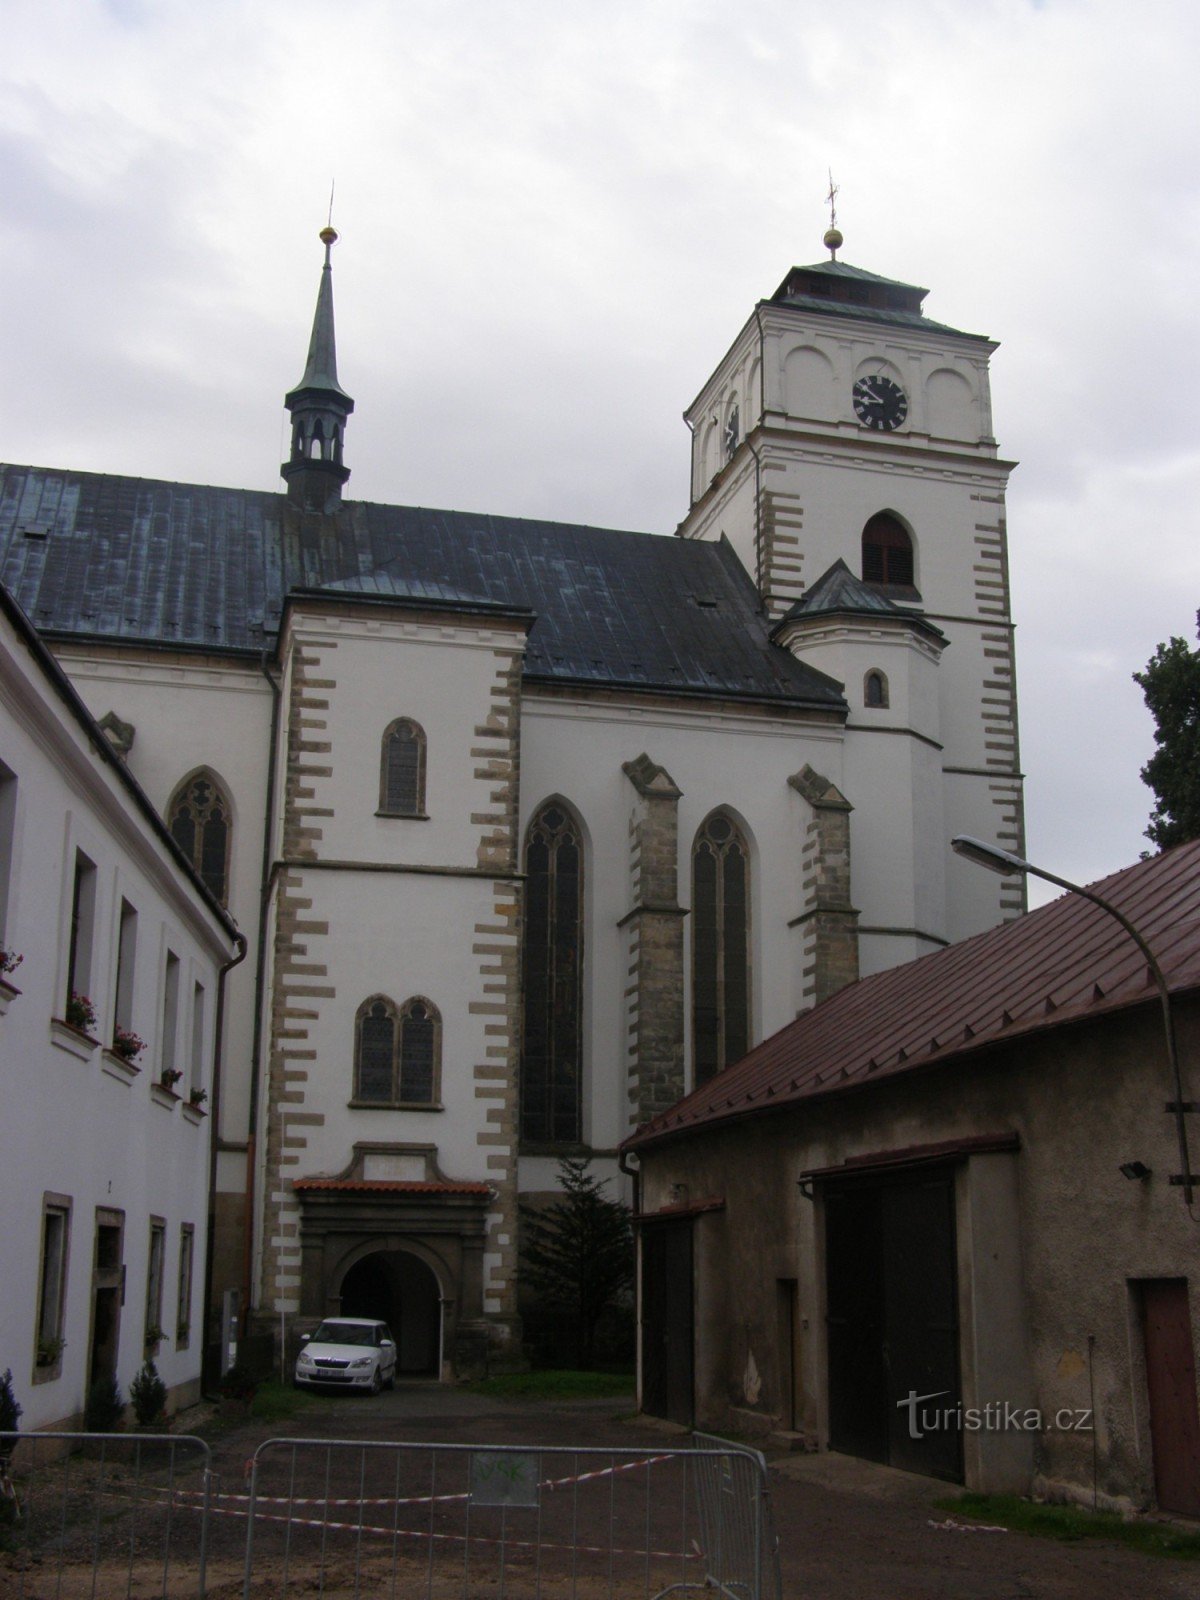 Subota - crkva sv. Marija Magdalena